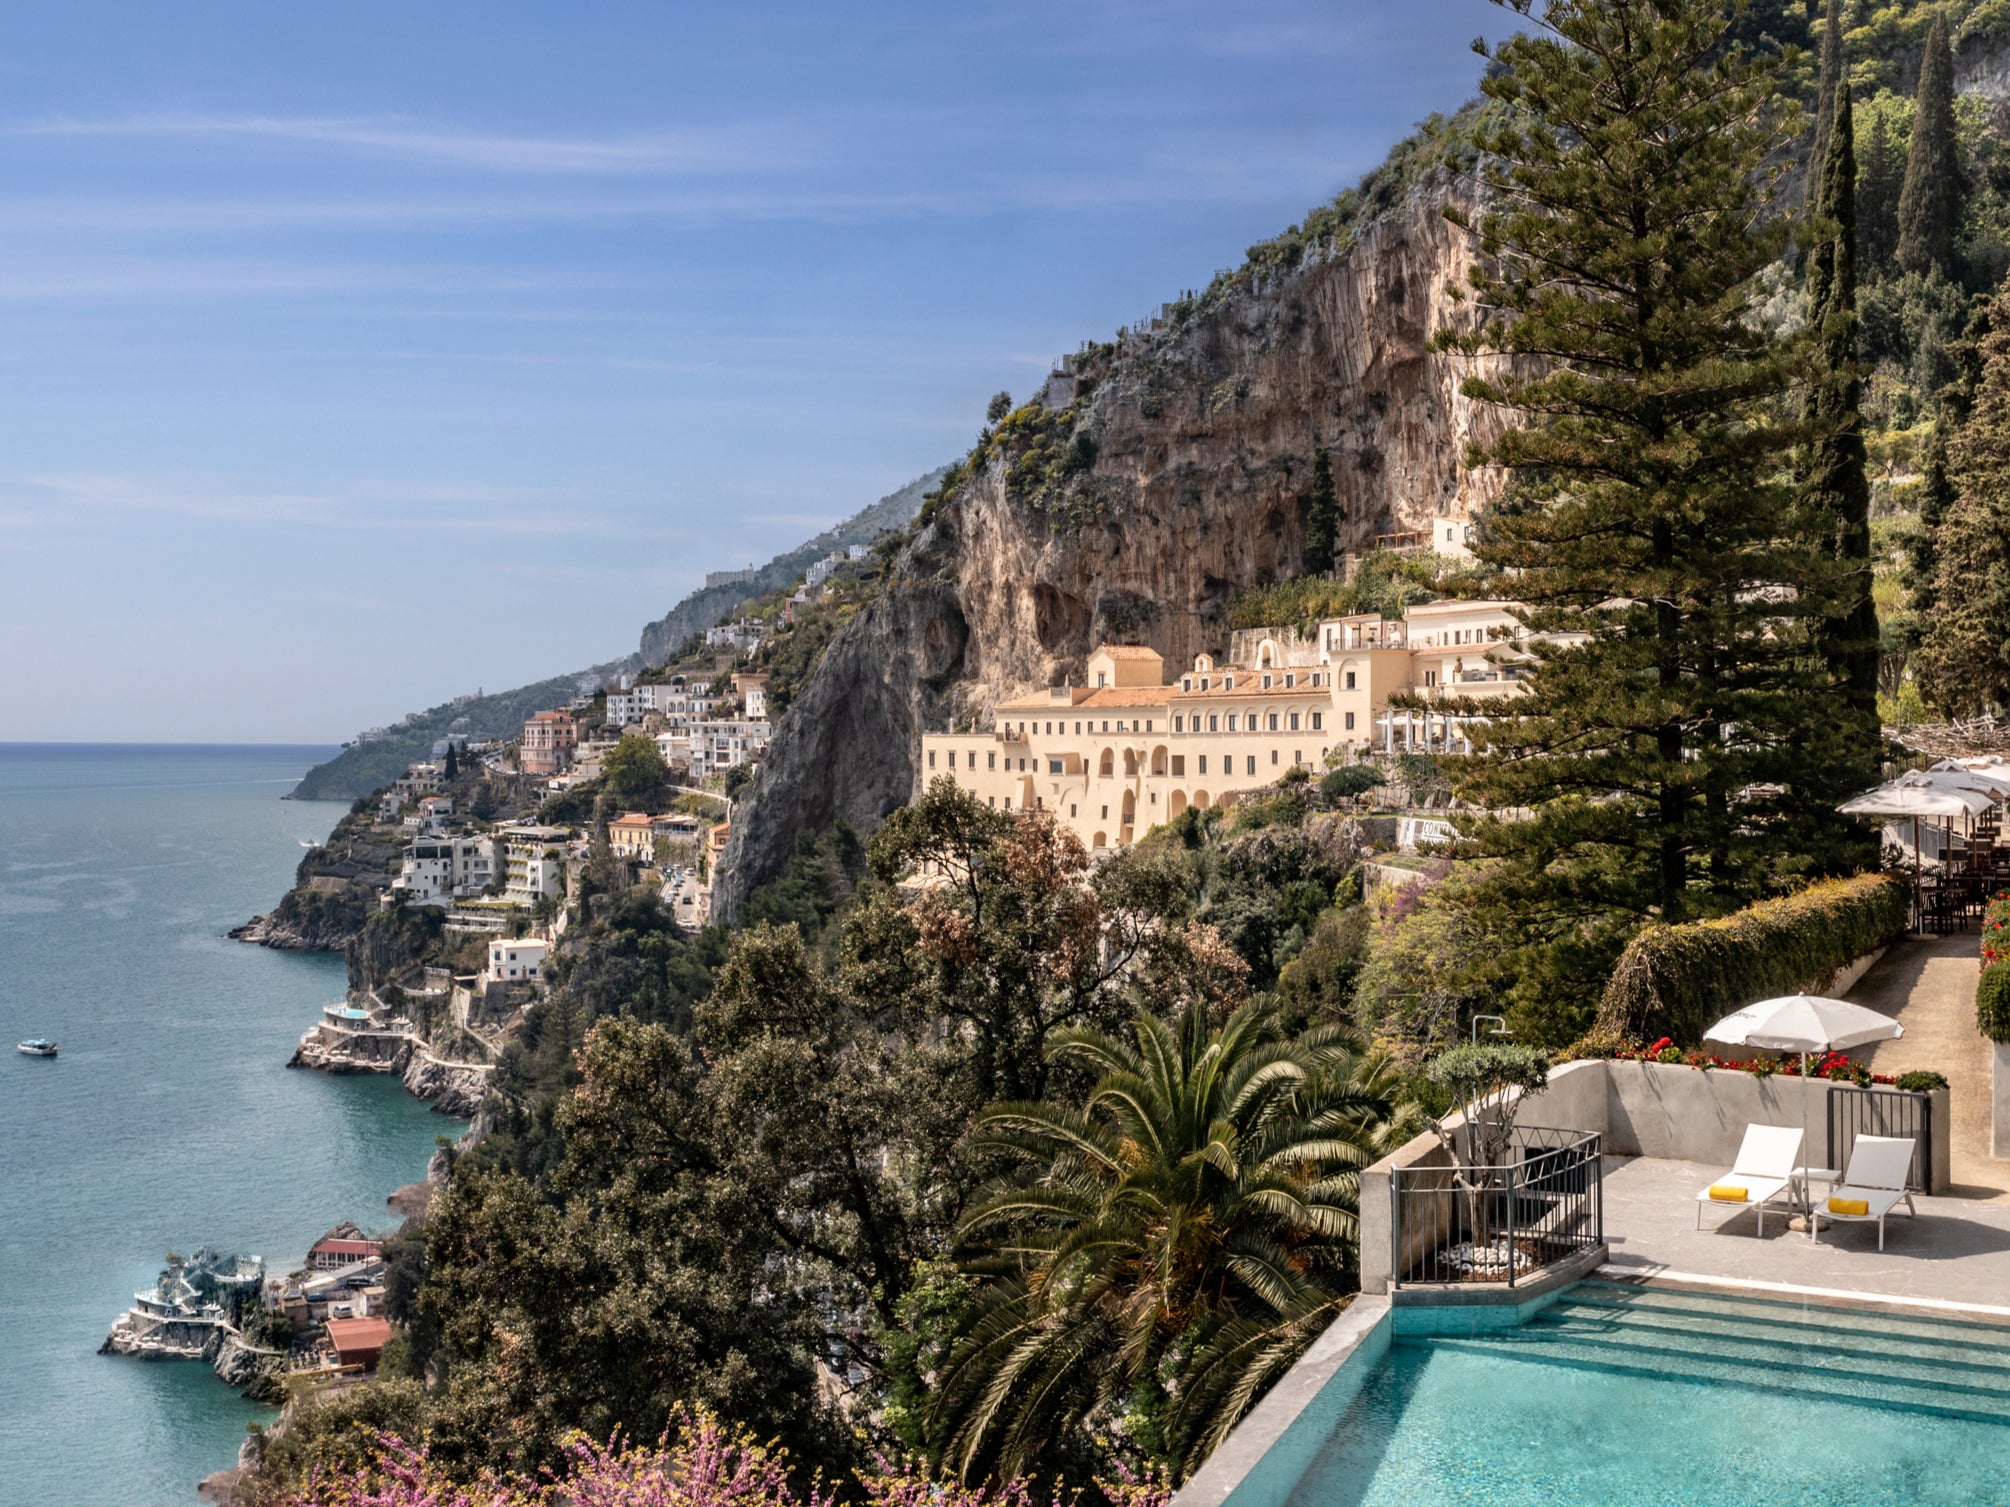 The Amalfi coast is still sumptuous off-season